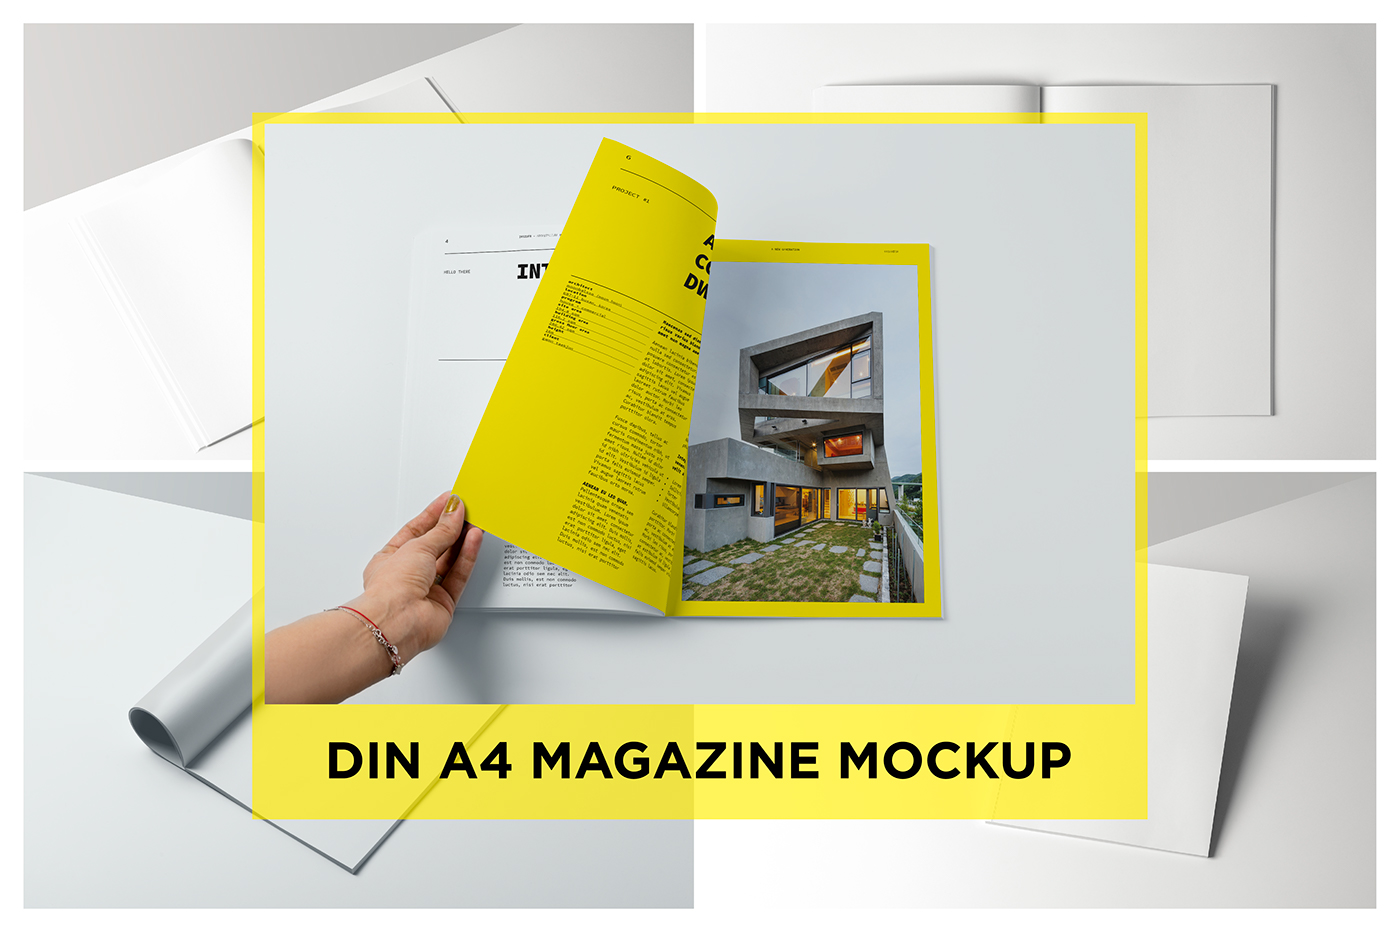 Magazine mockup brochure mockup product mockup portfolio Layout clean grey abstract minimal scene